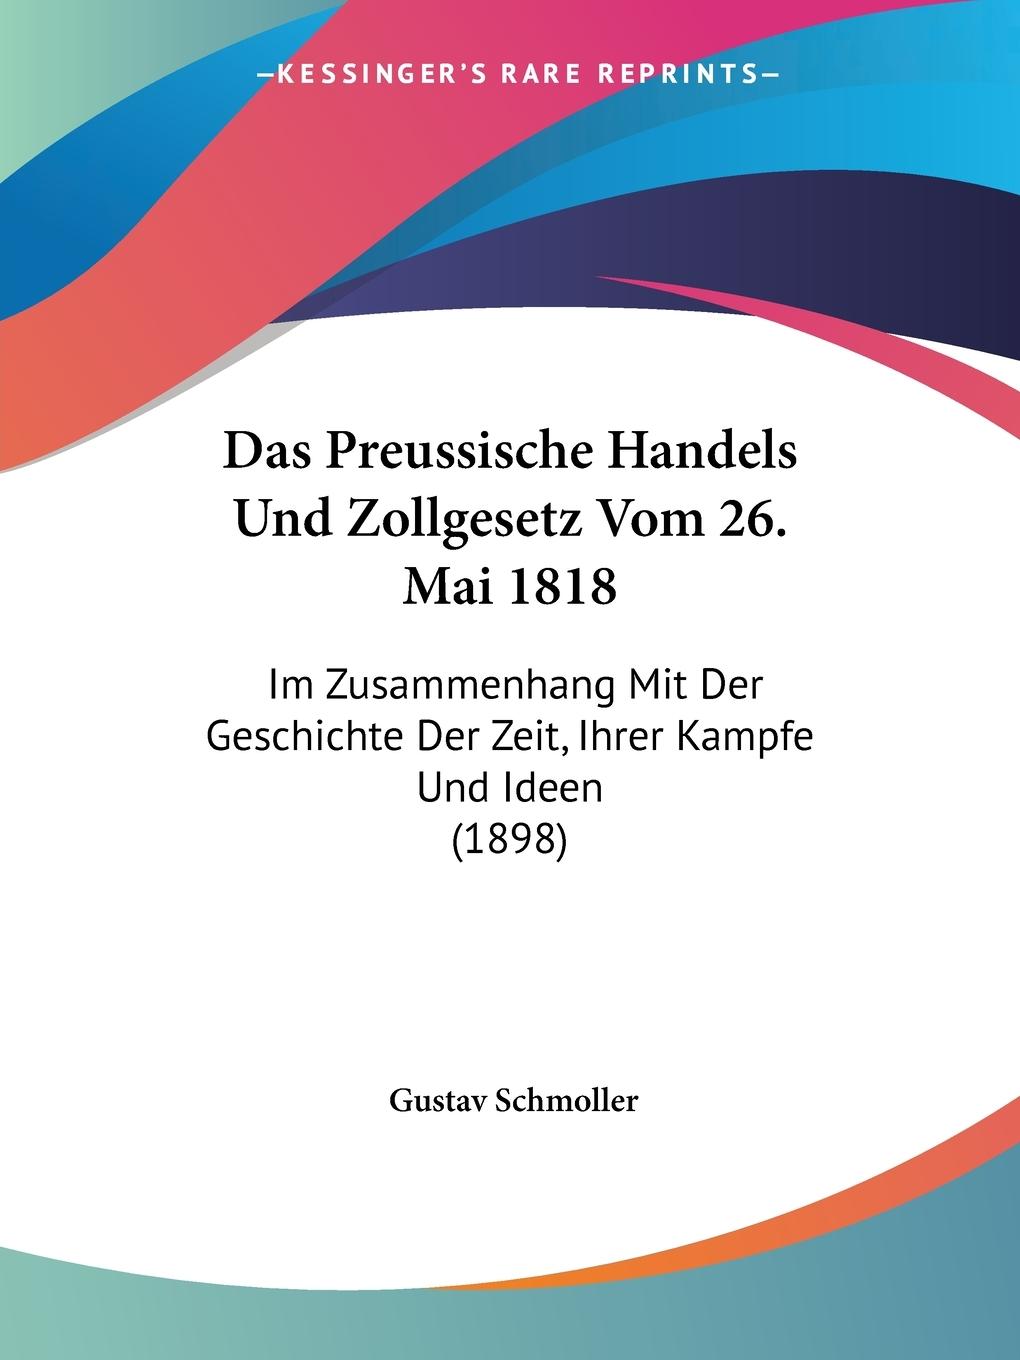 Das Preussische Handels Und Zollgesetz Vom 26. Mai 1818 - Schmoller, Gustav